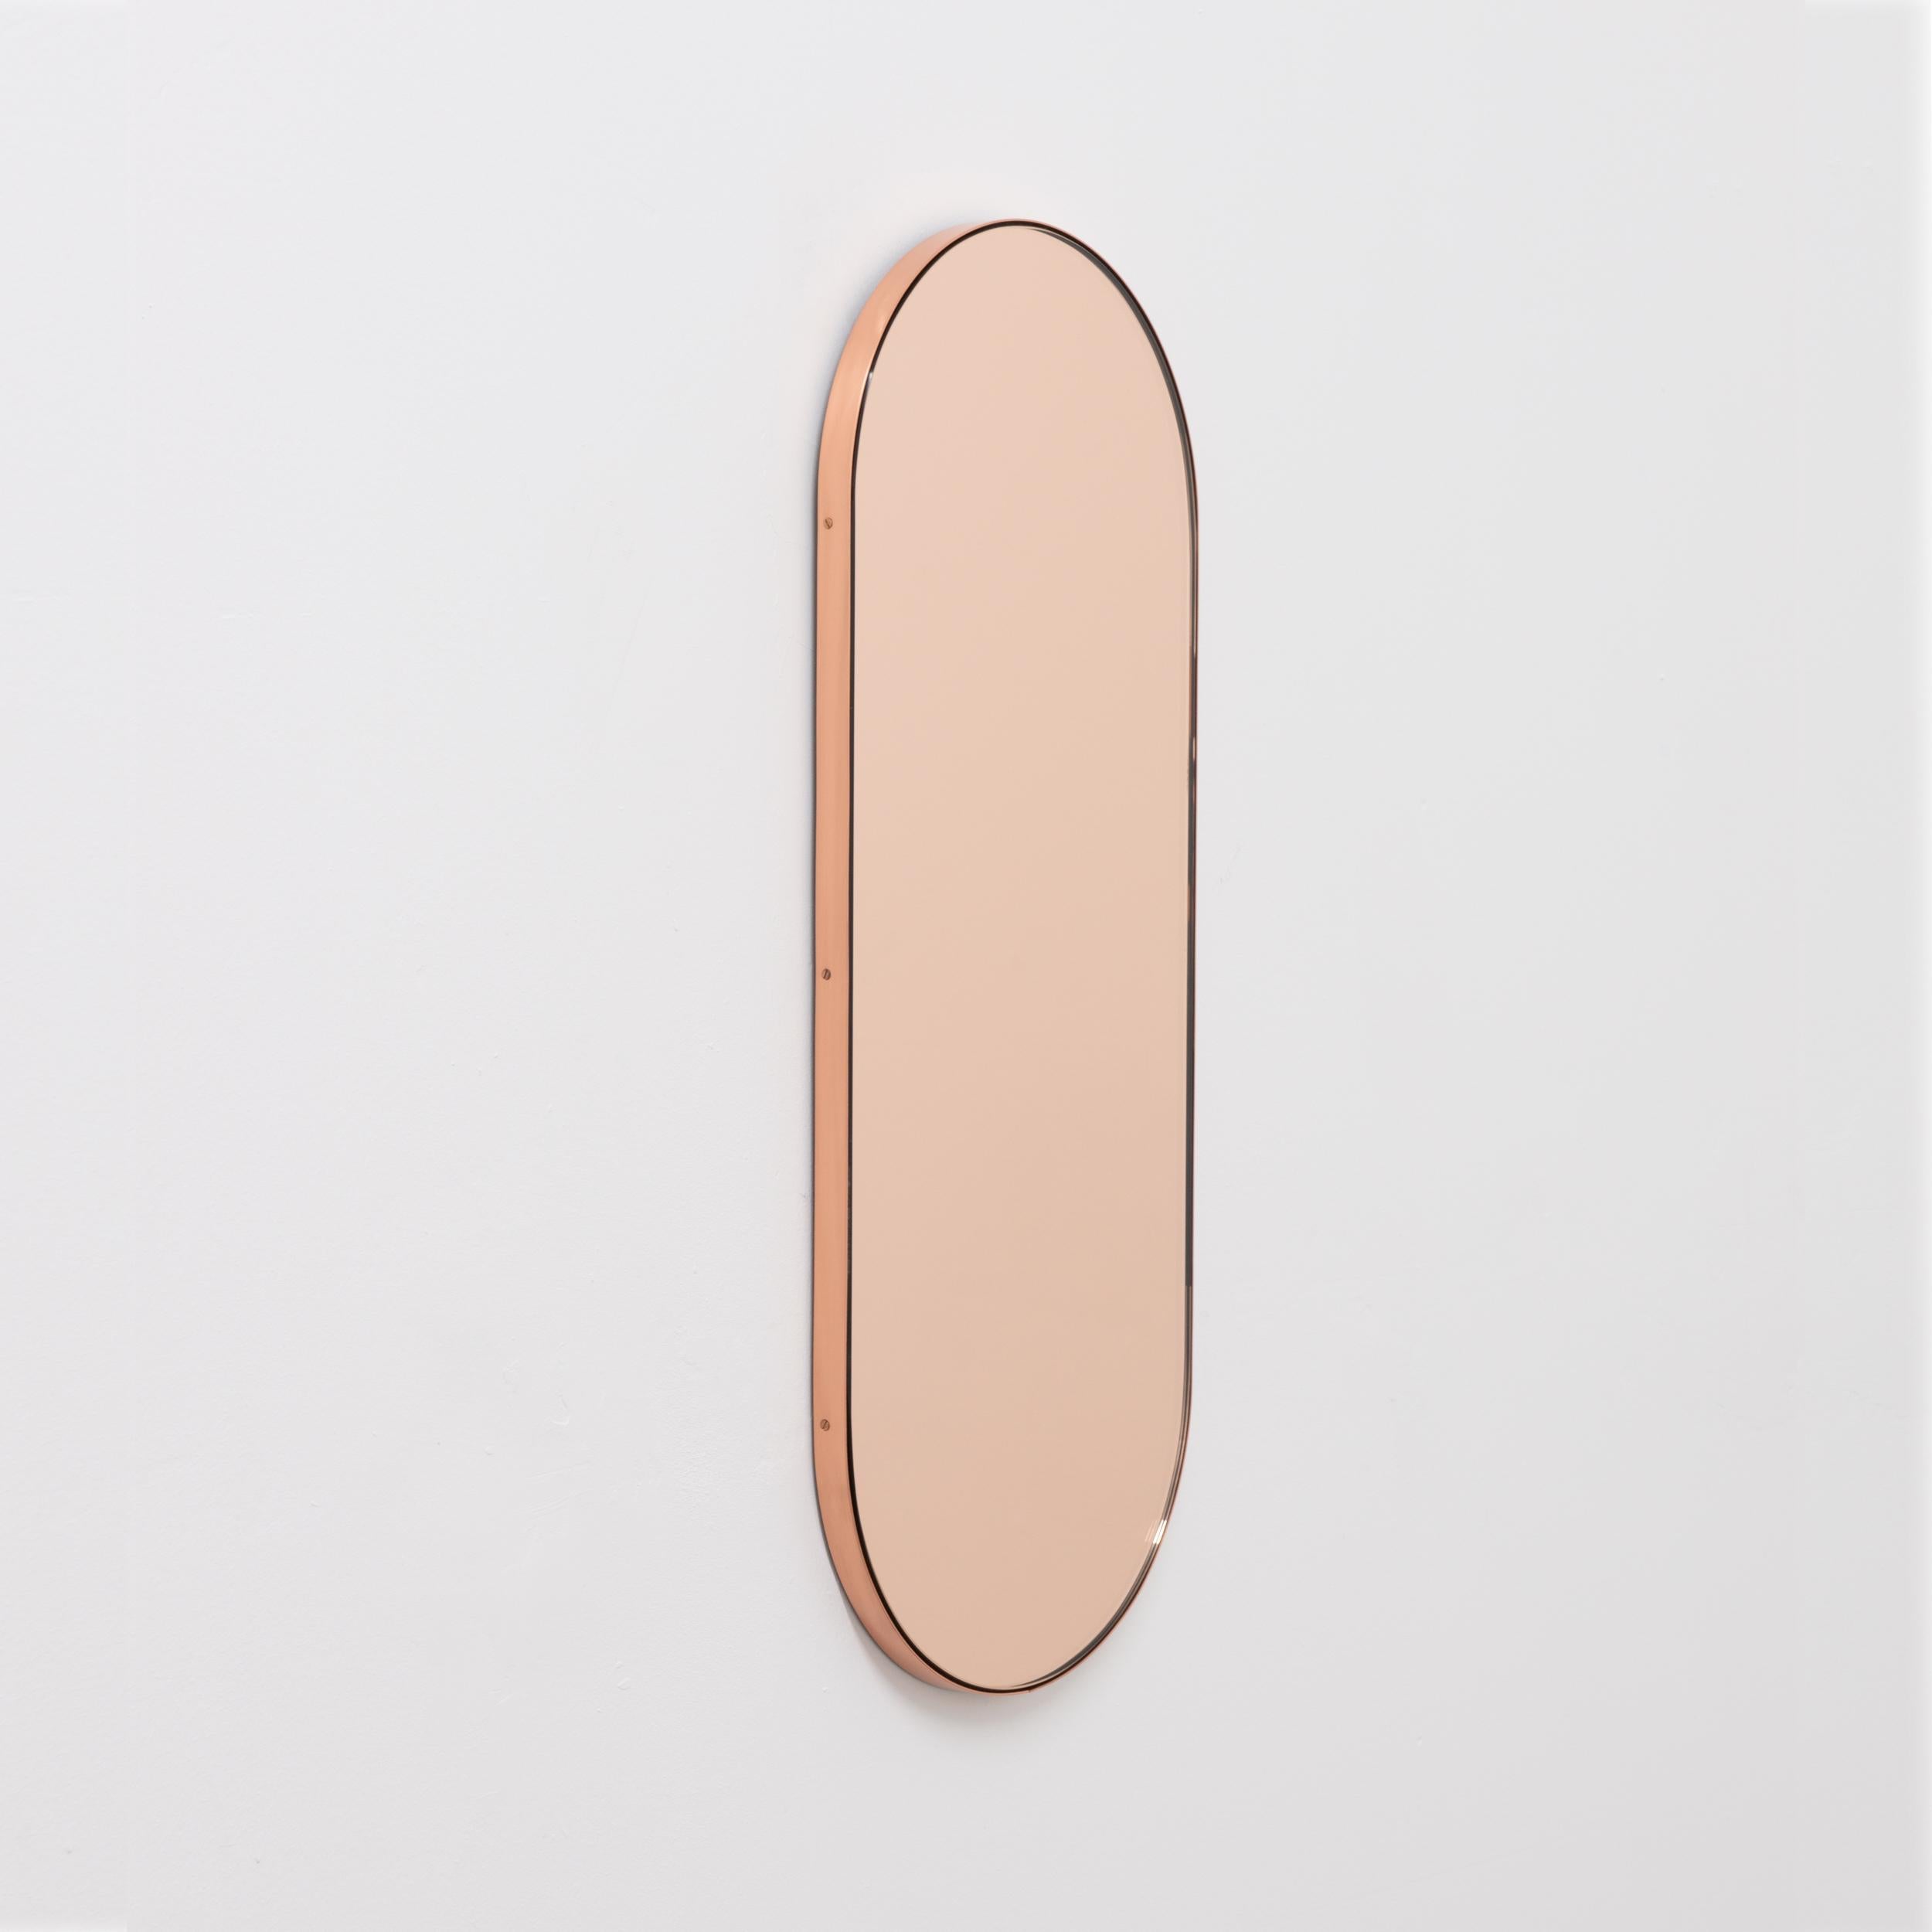 Miroir contemporain en forme de capsule en or rose ou pêche avec un élégant cadre en cuivre. Conçu et fabriqué à la main à Londres, au Royaume-Uni. Les détails et la finition, y compris les vis visibles plaquées de cuivre, soulignent l'aspect